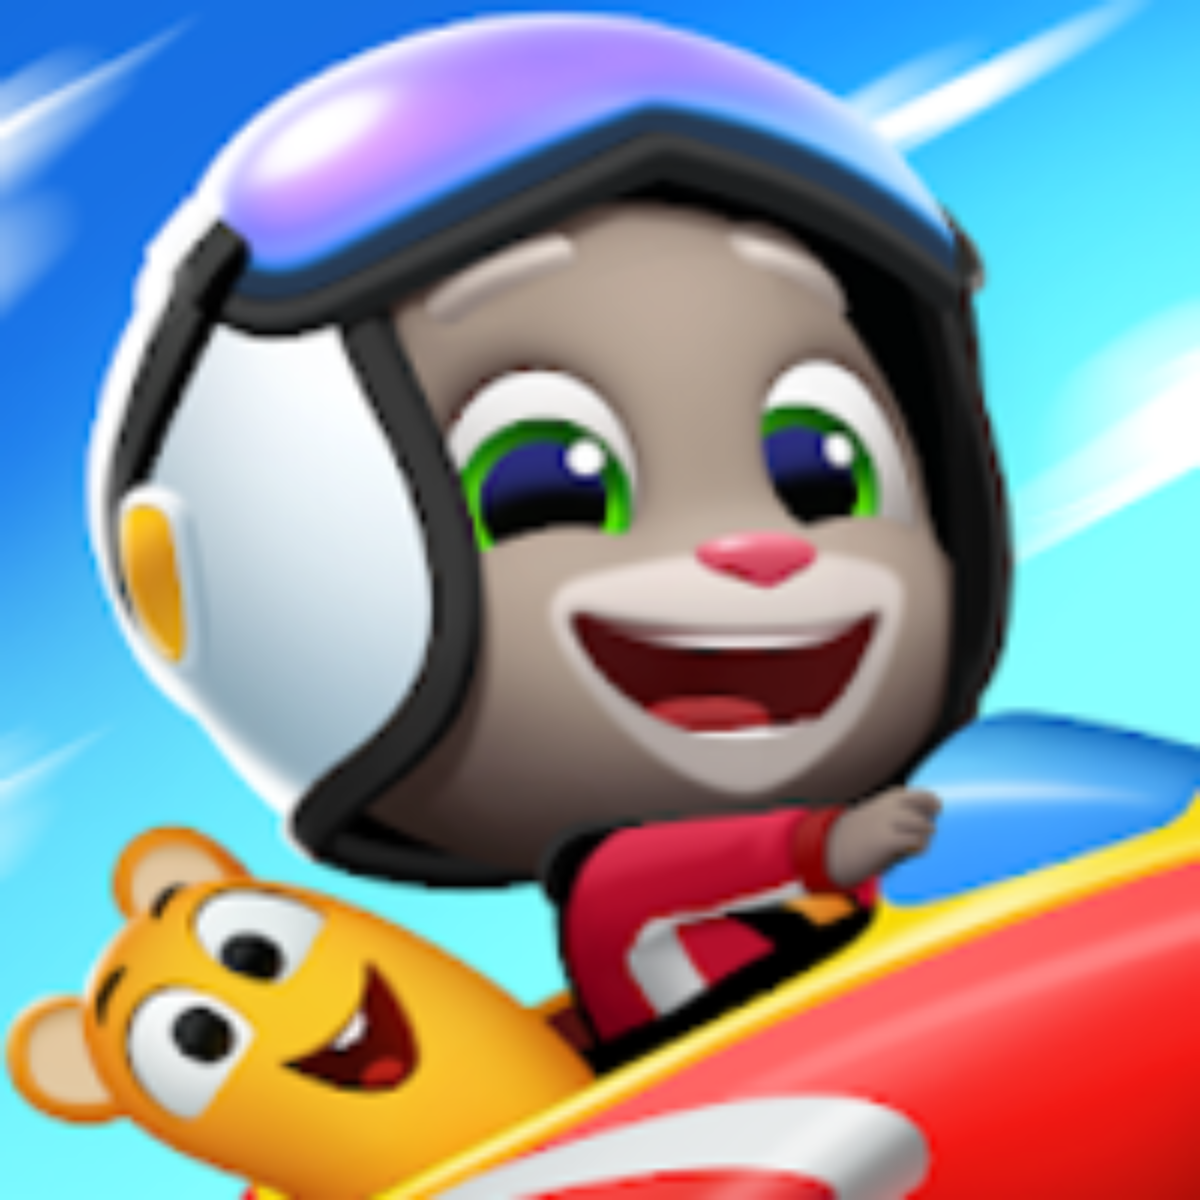 Baixe Talking Tom Fly Run: Novo jogo de corrida legal no PC com MEmu